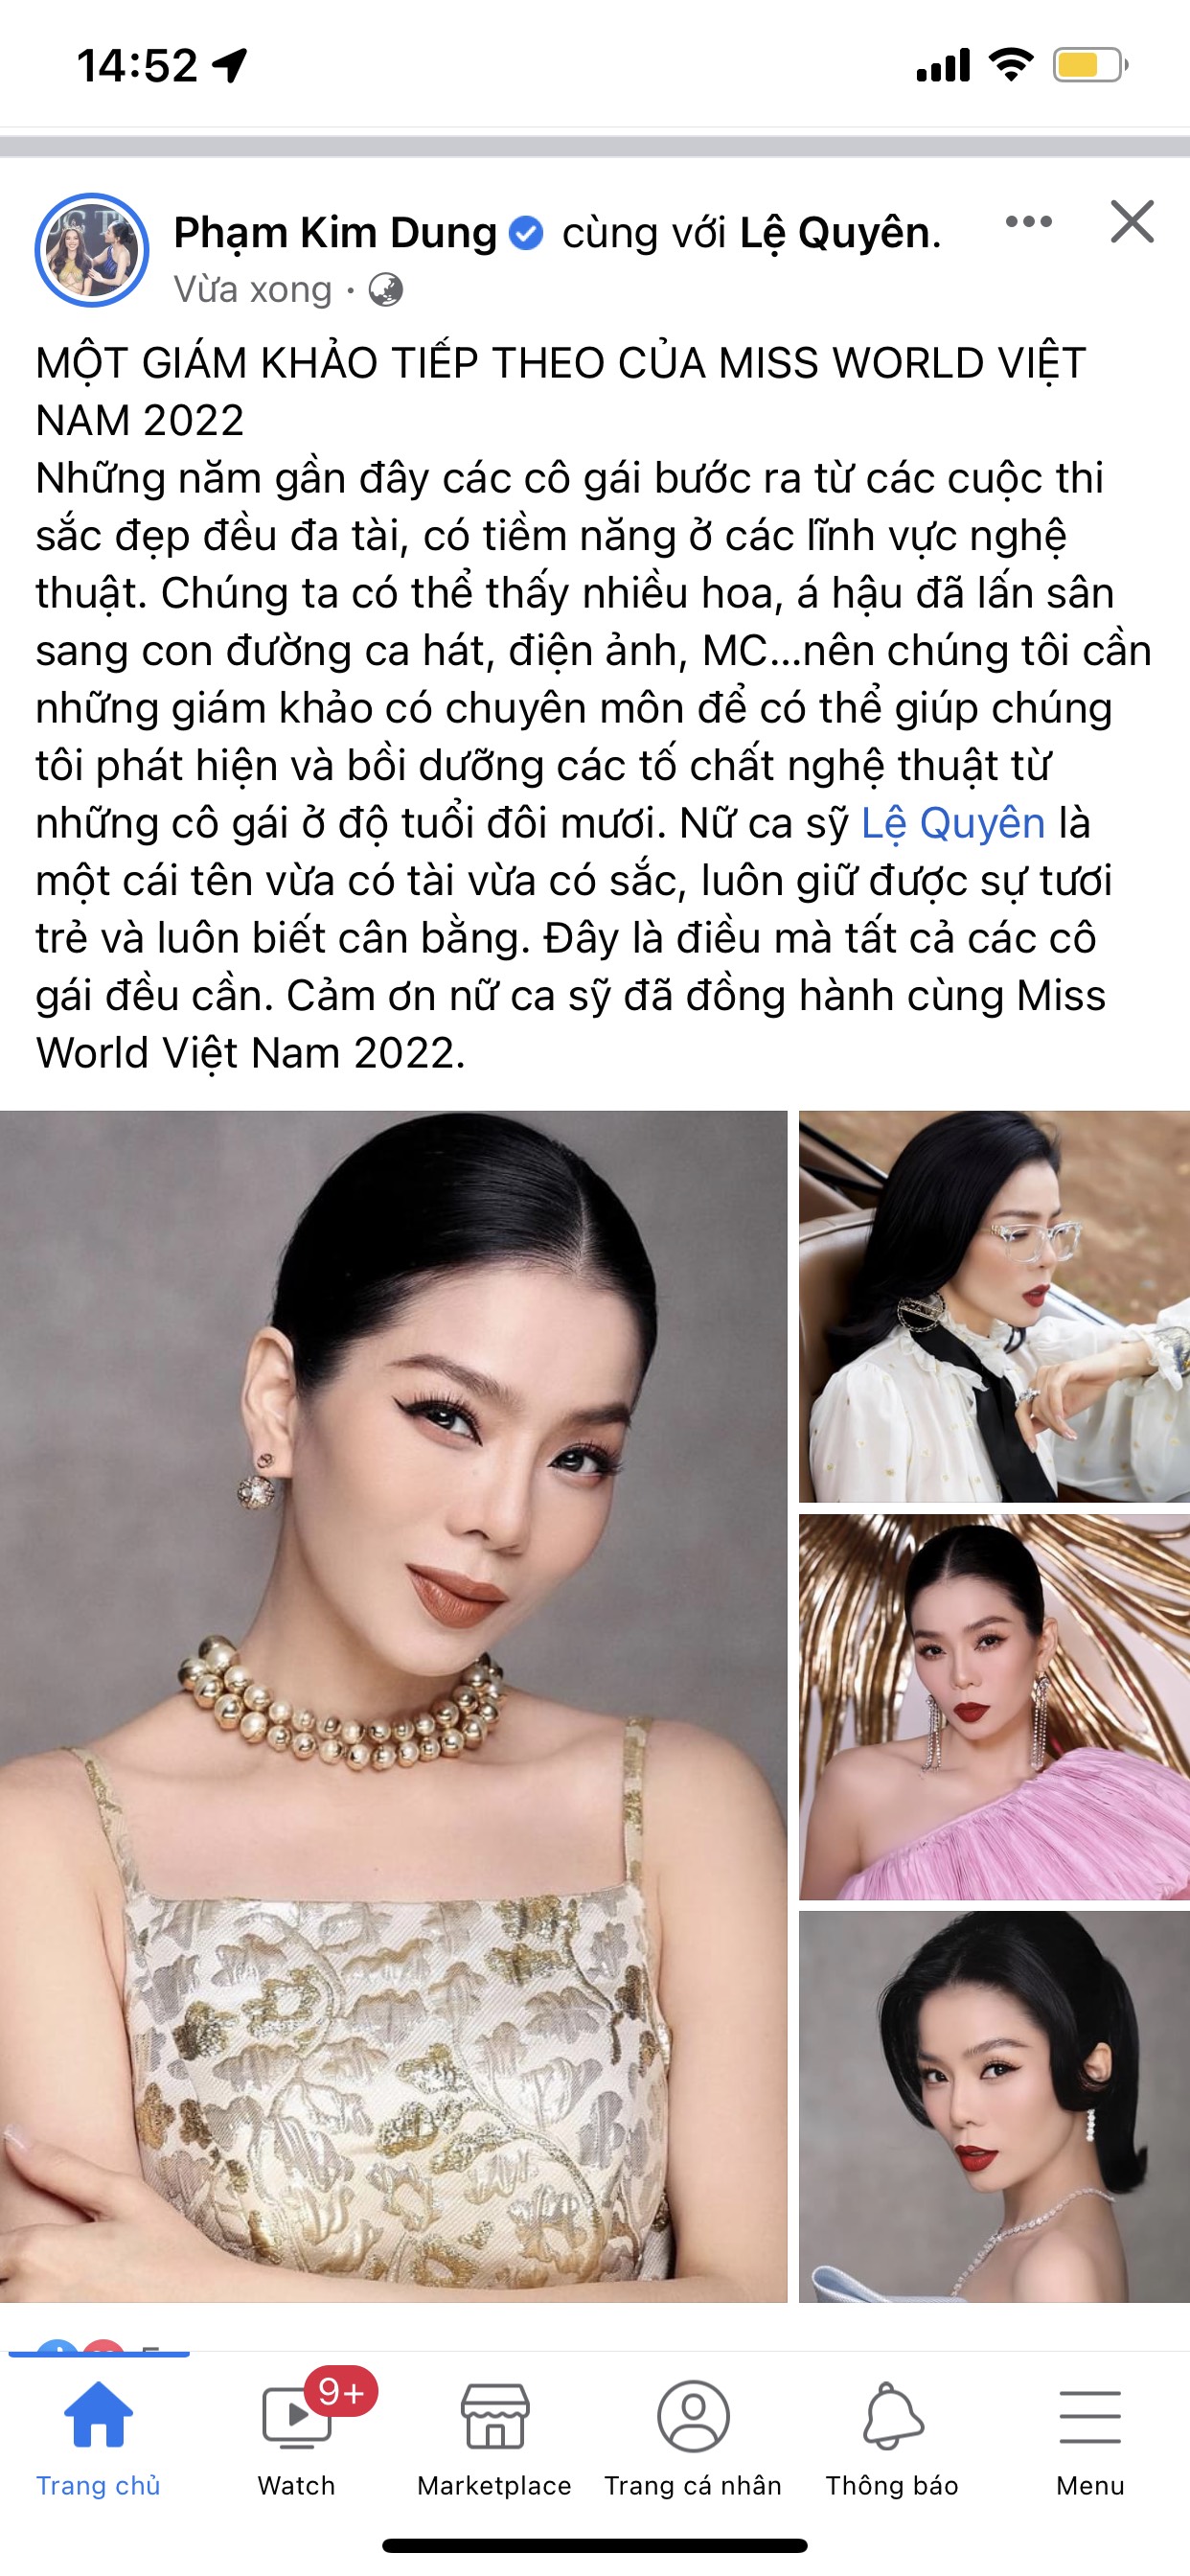 Bài viết trước đó của bà Phạm Kim Dung, khẳng định ca sĩ Lệ Quyên phù hợp khi ngồi vào ghế ban giám khảo